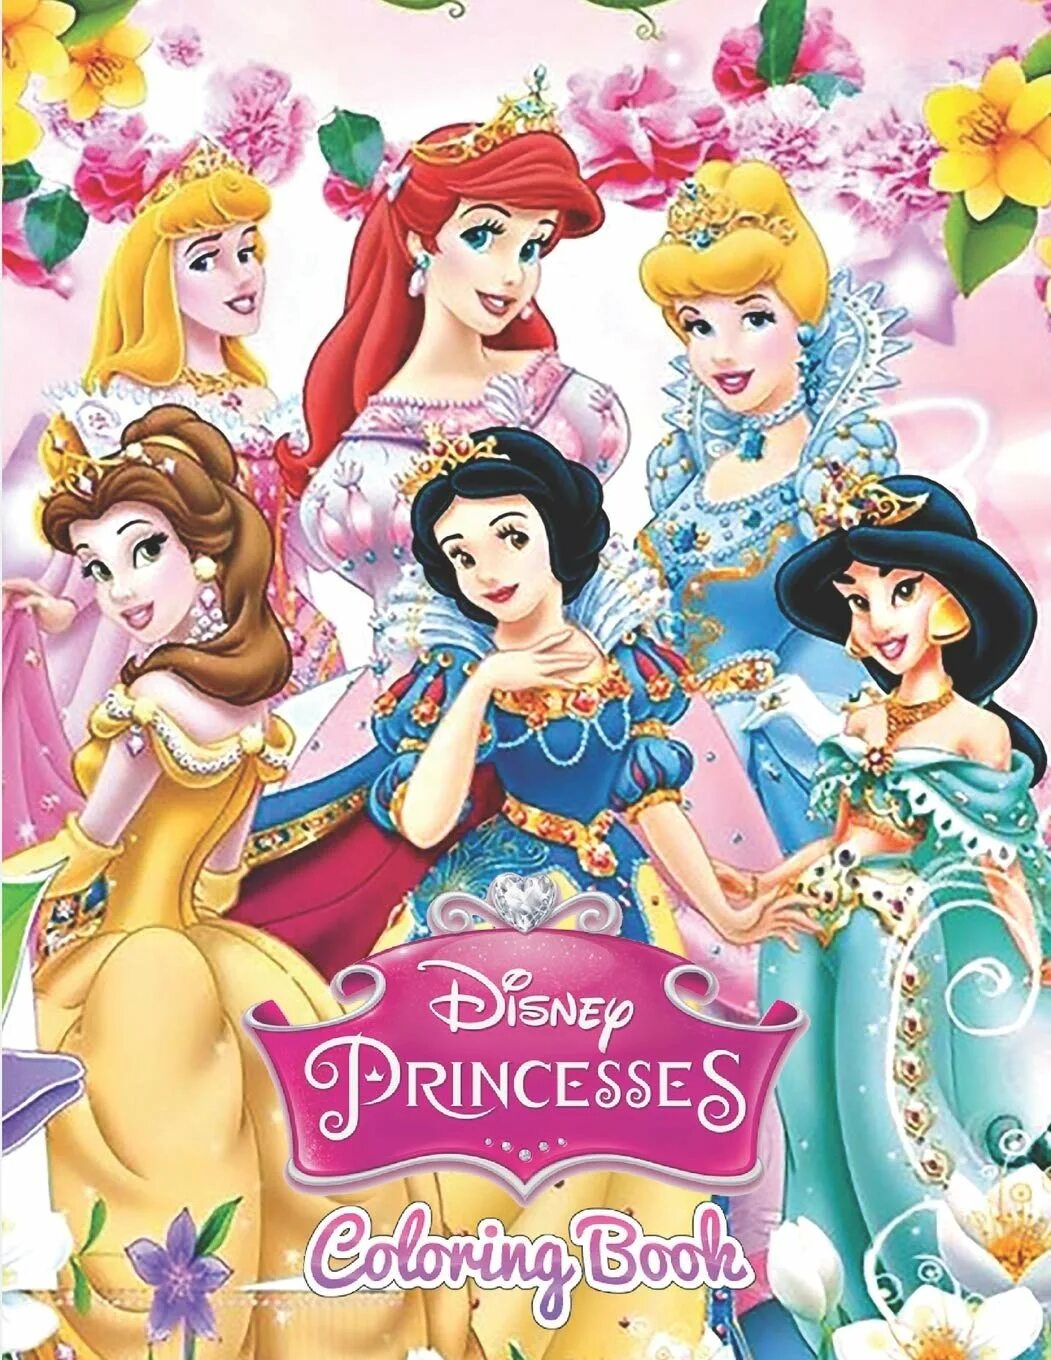 Цвет принцесс. Disney Princess Coloring book. Princess Coloring book Printing book.